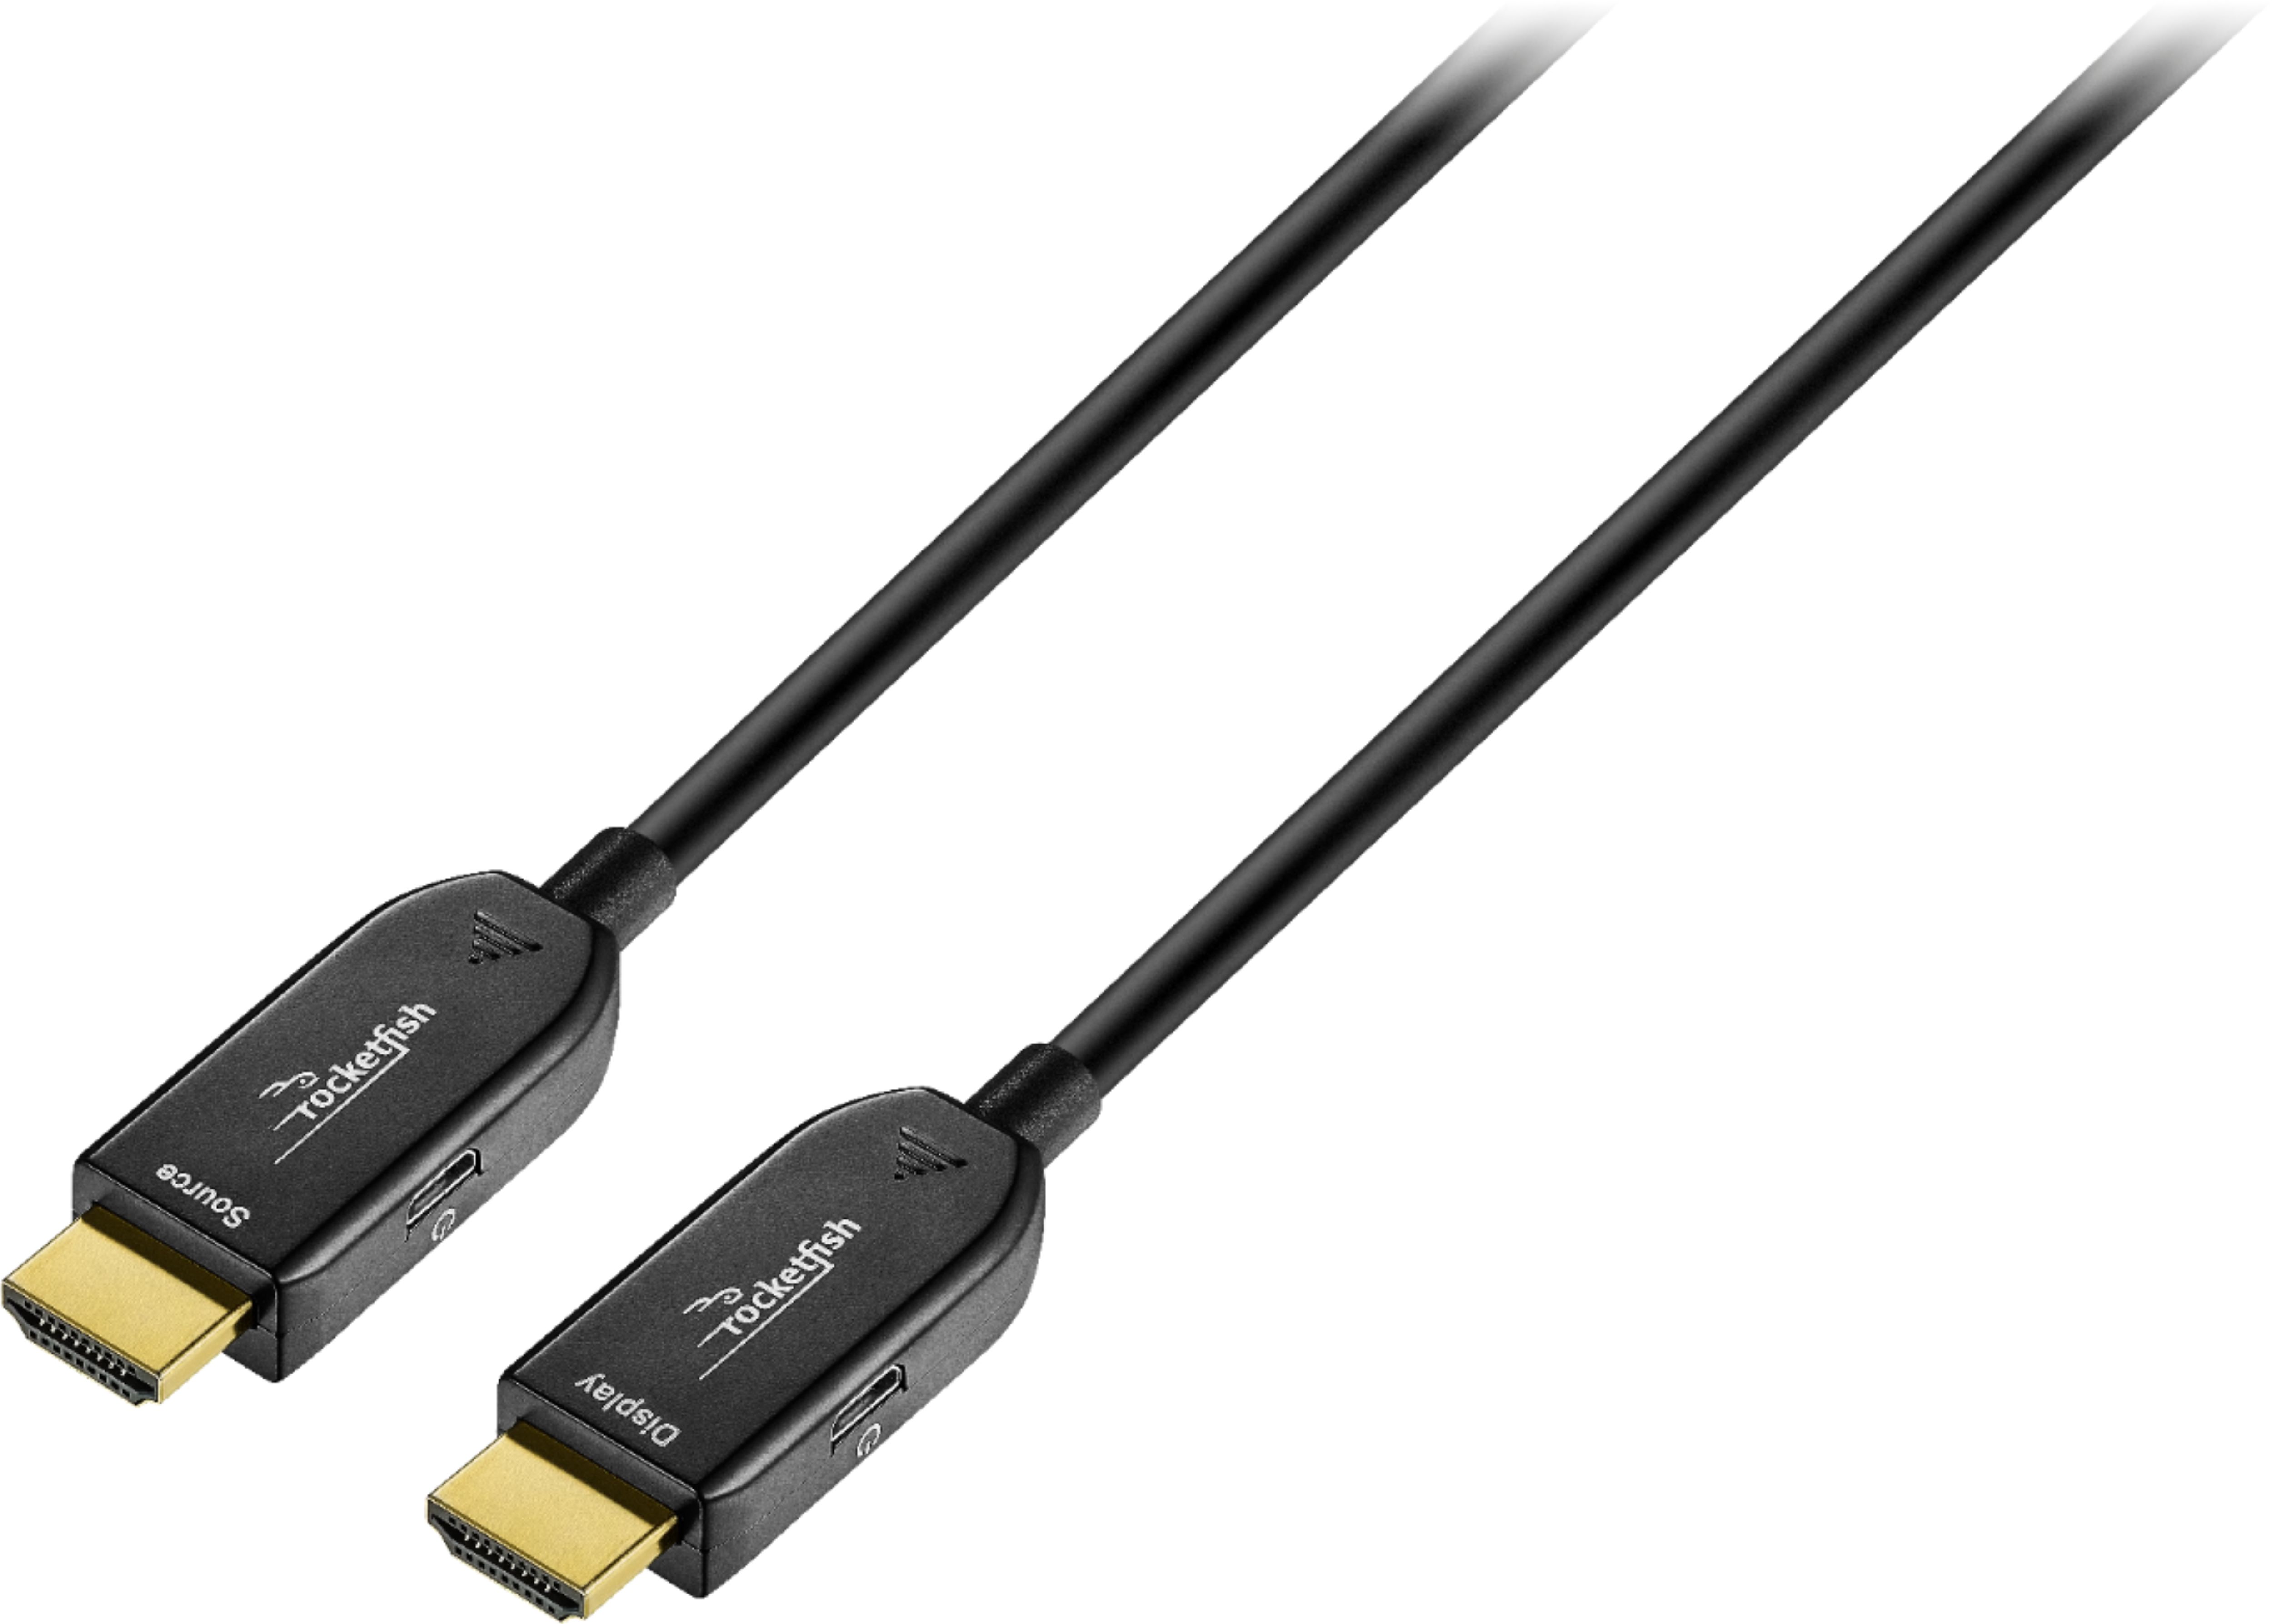 Tienda online con Cable de vídeo HDMI 1,8 metros (CC-HDMI4-6). DISOFIC